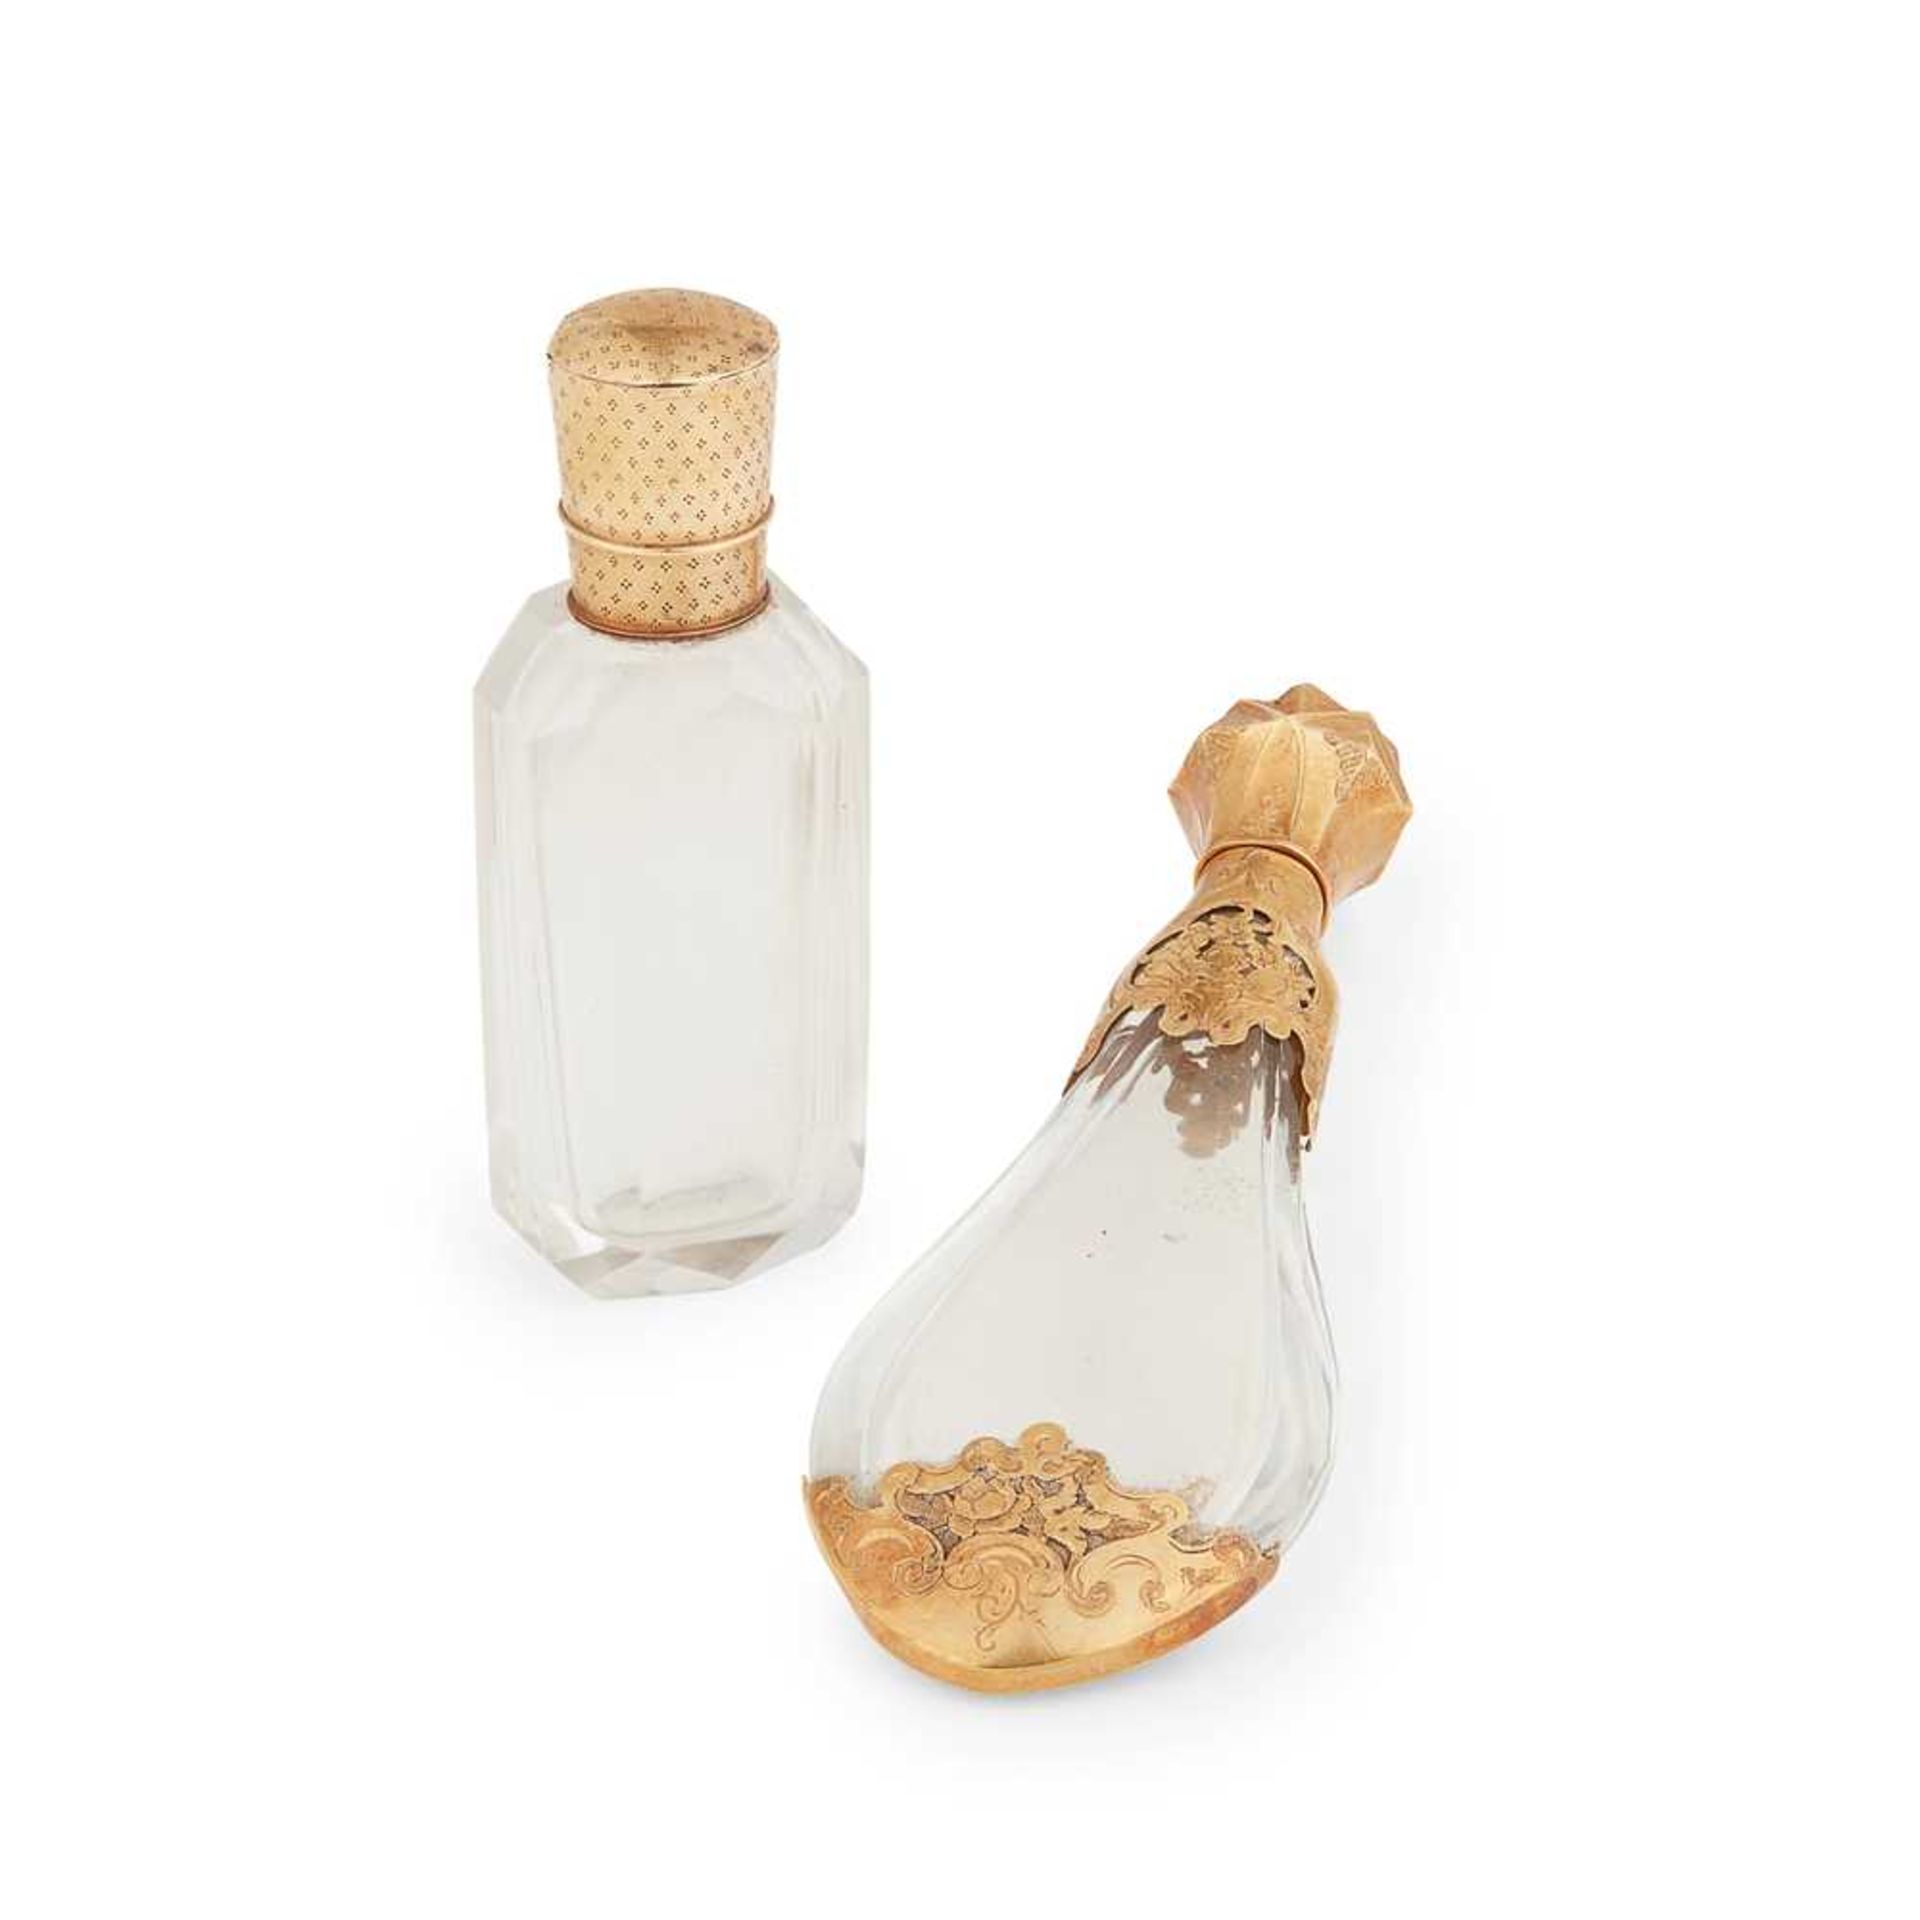 A Dutch gold scent bottle